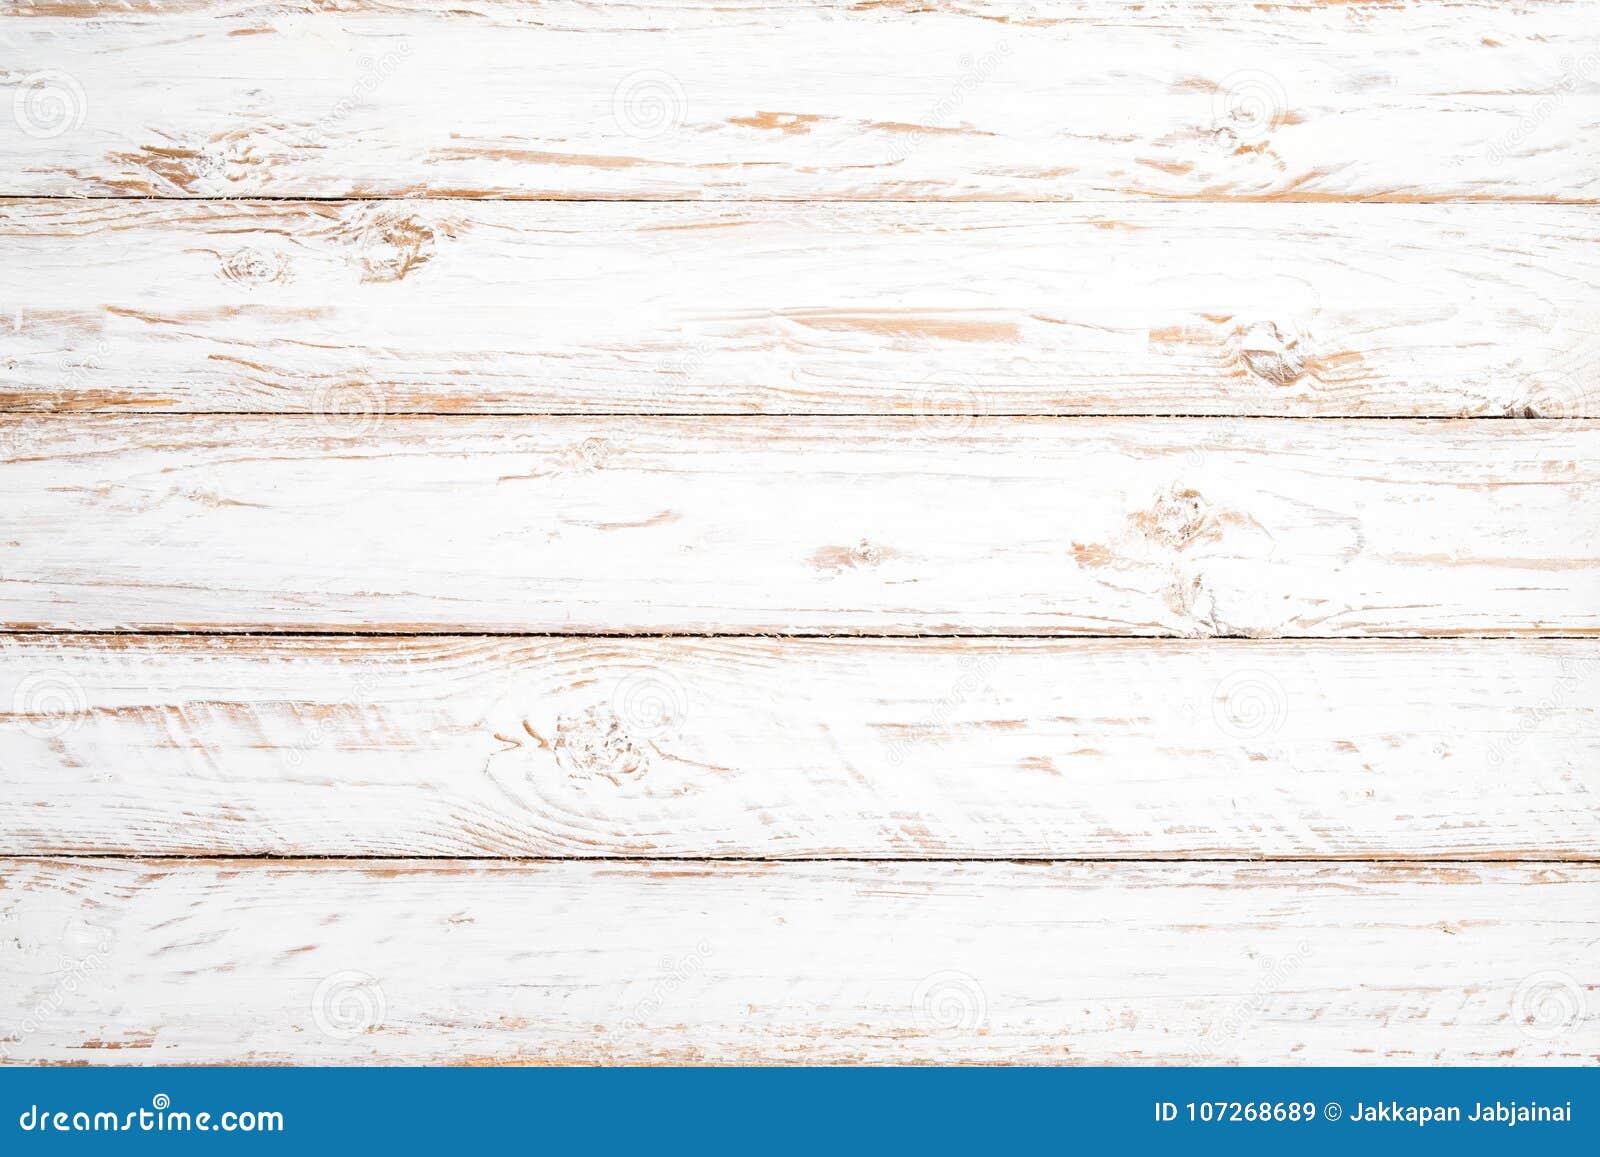 Vintage White Wood Background Stock Image - Image of background ...